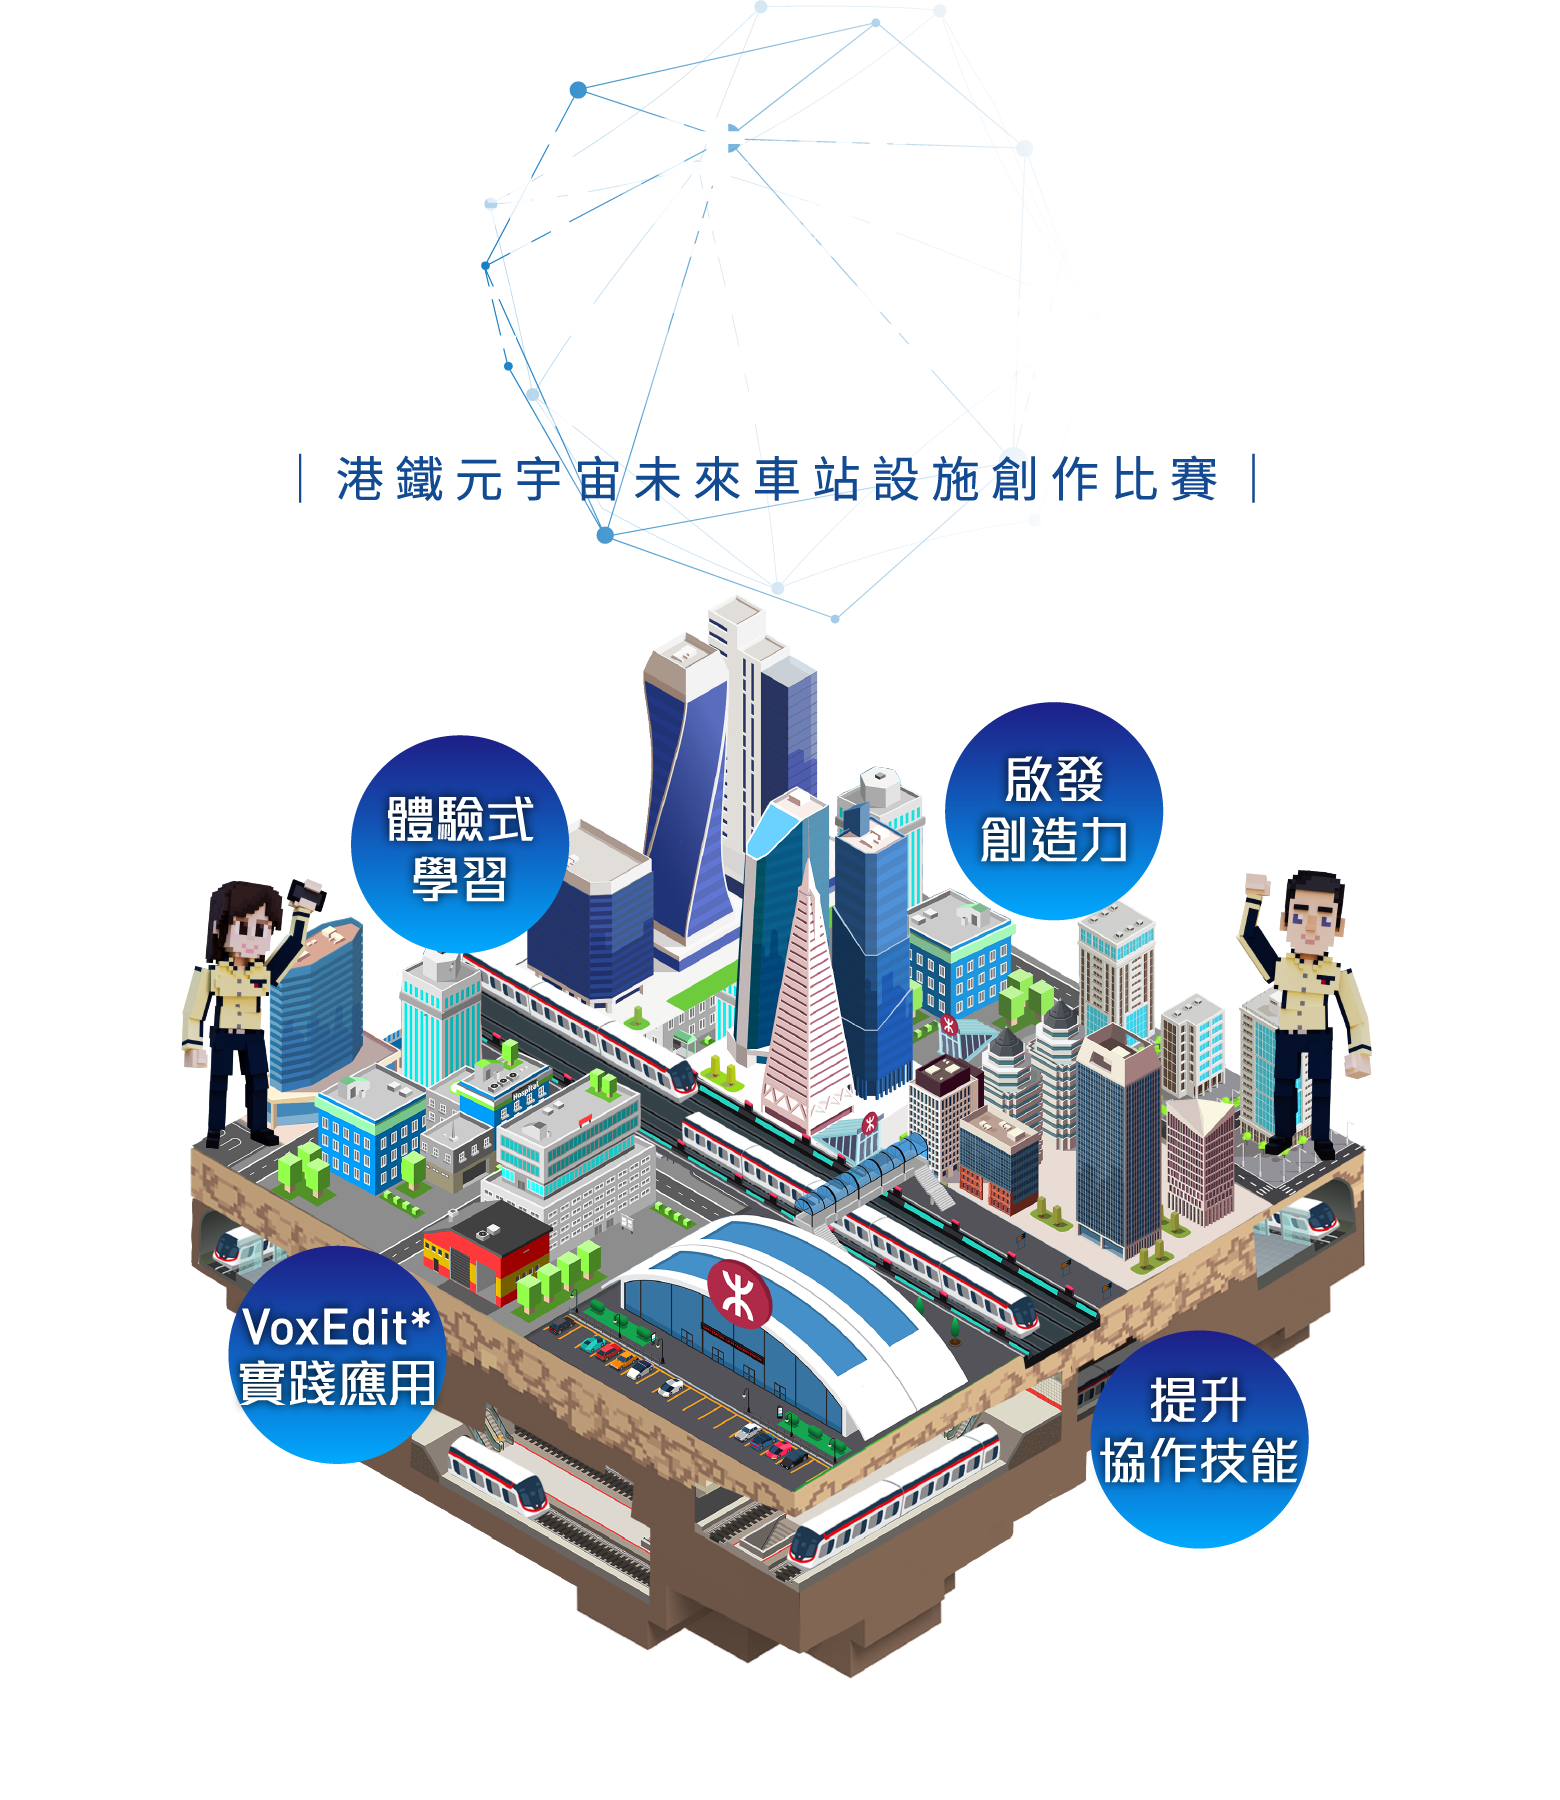 港鐵元宇宙未來車站設施創作比賽